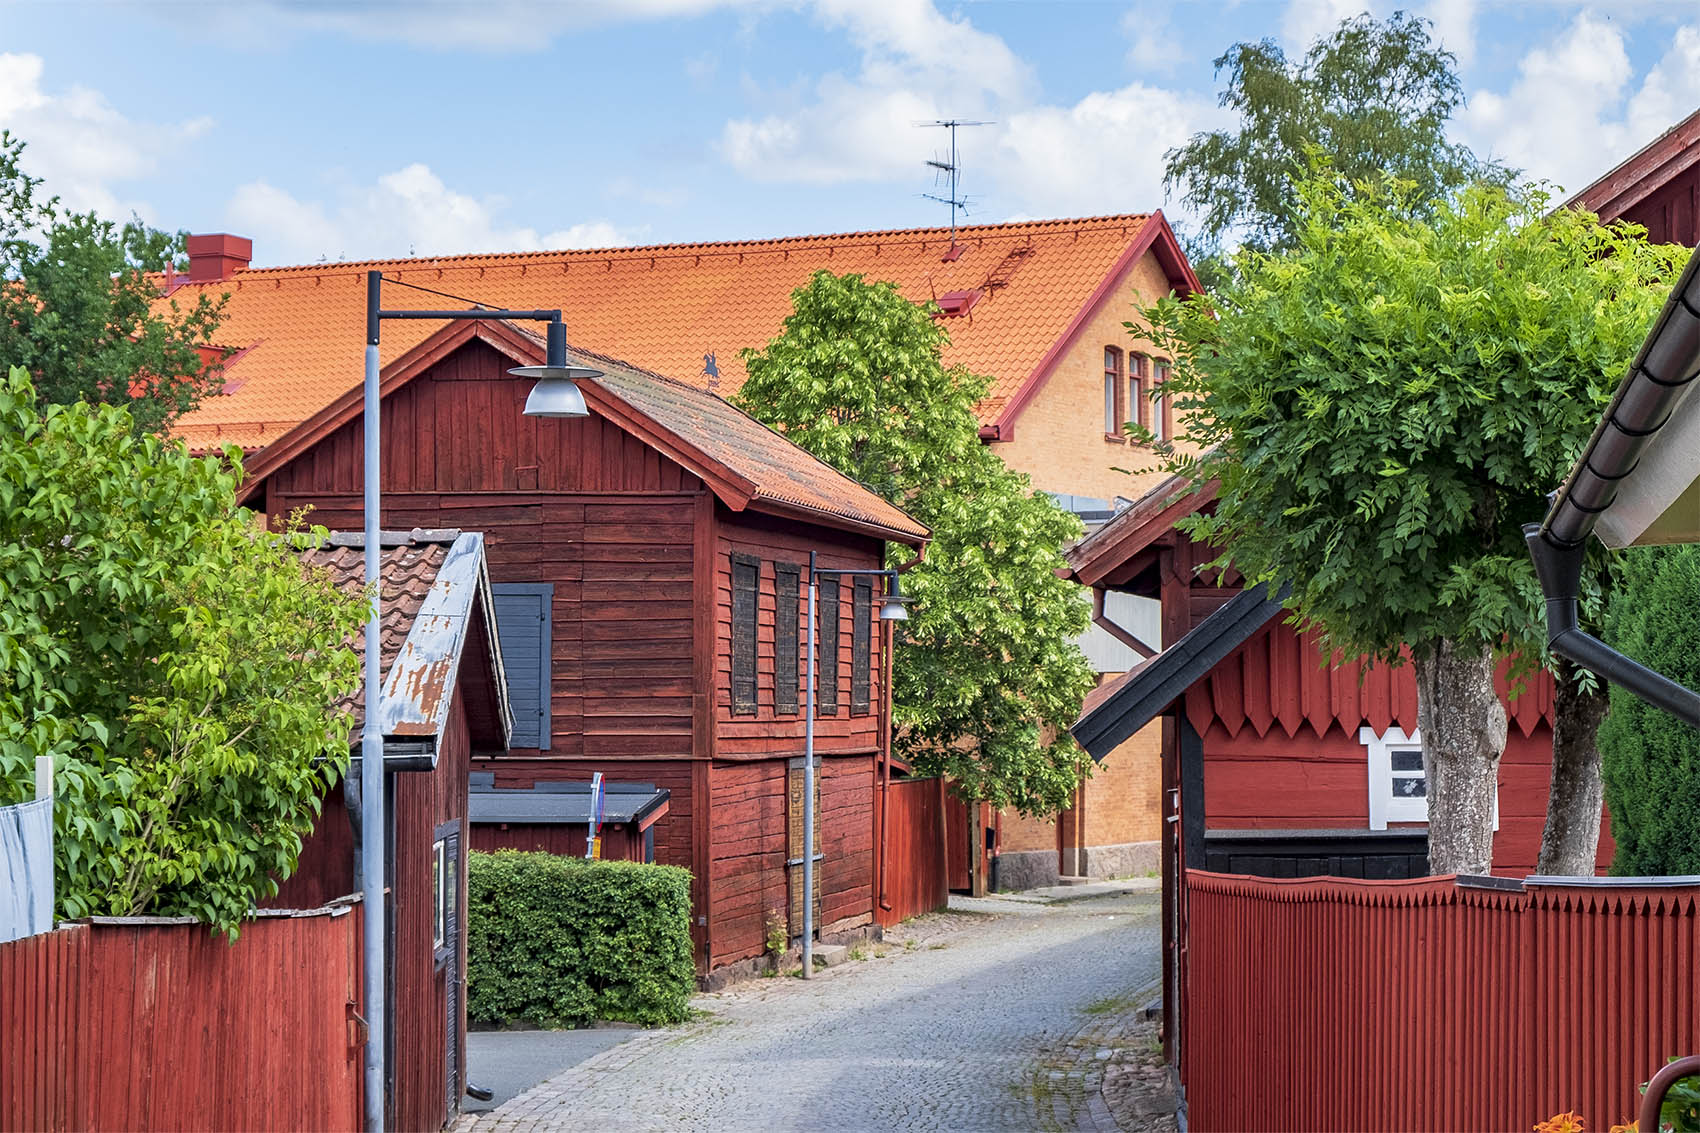 Torkladan och Eksjö museum